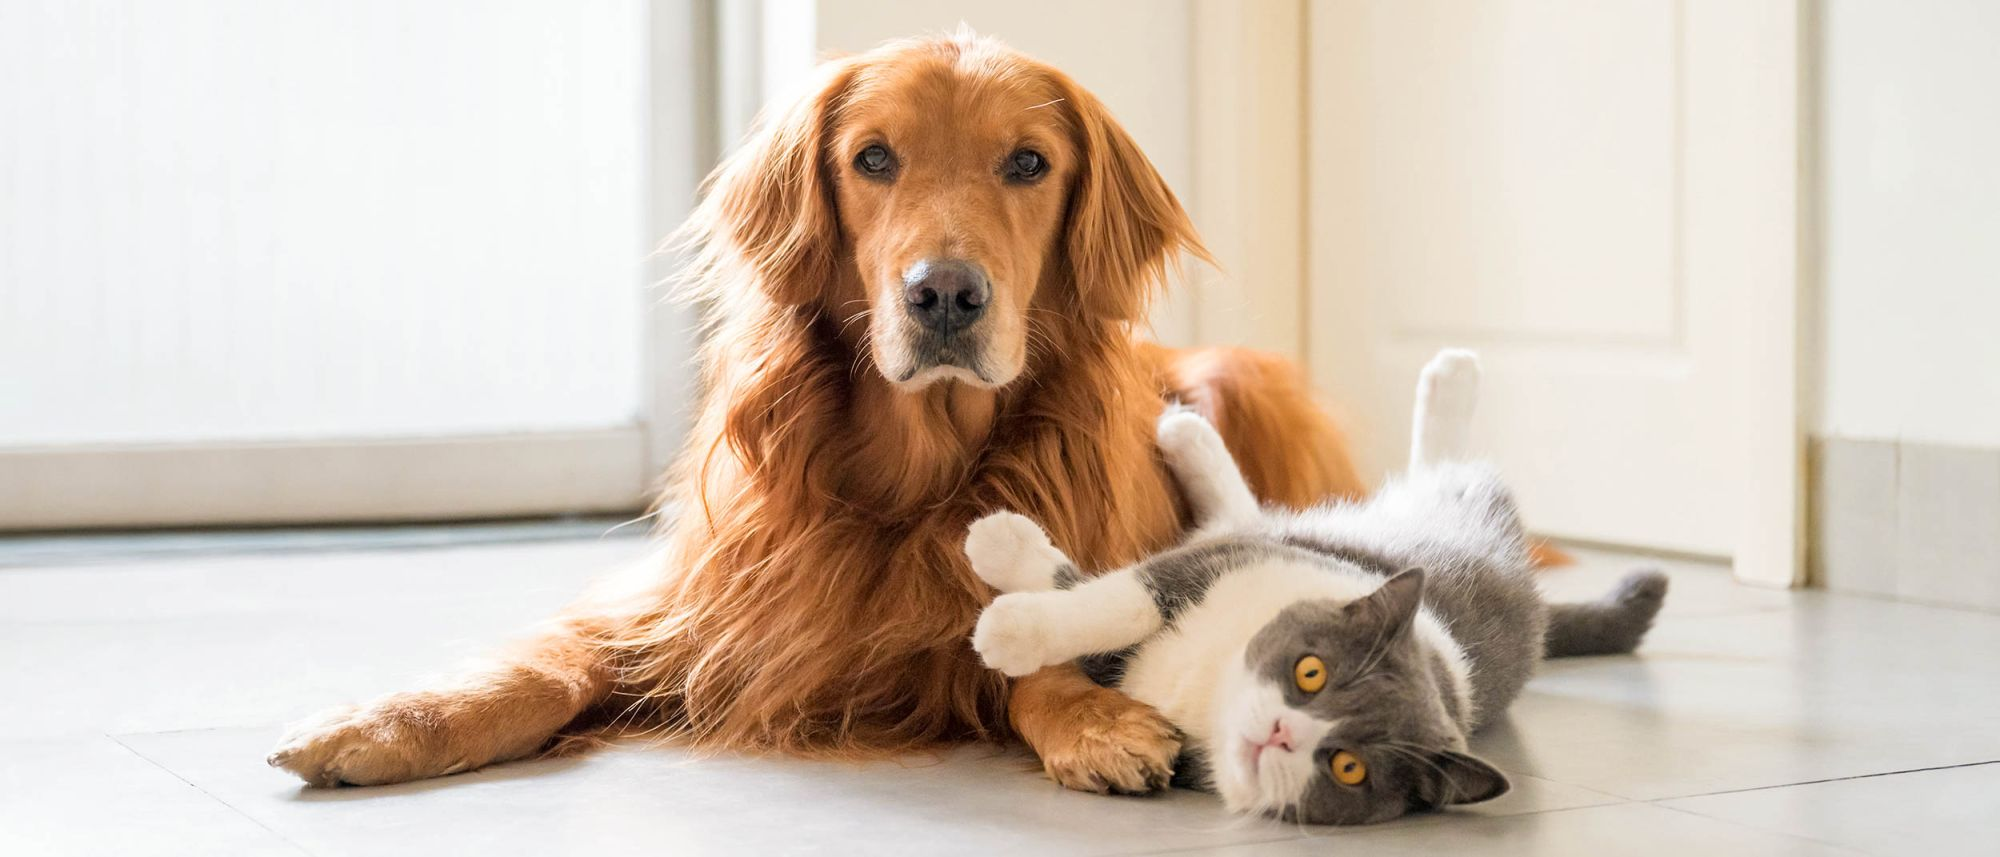 Erwachsene Katze und Hund liegen zusammen im Innenbereich auf einem Küchenboden